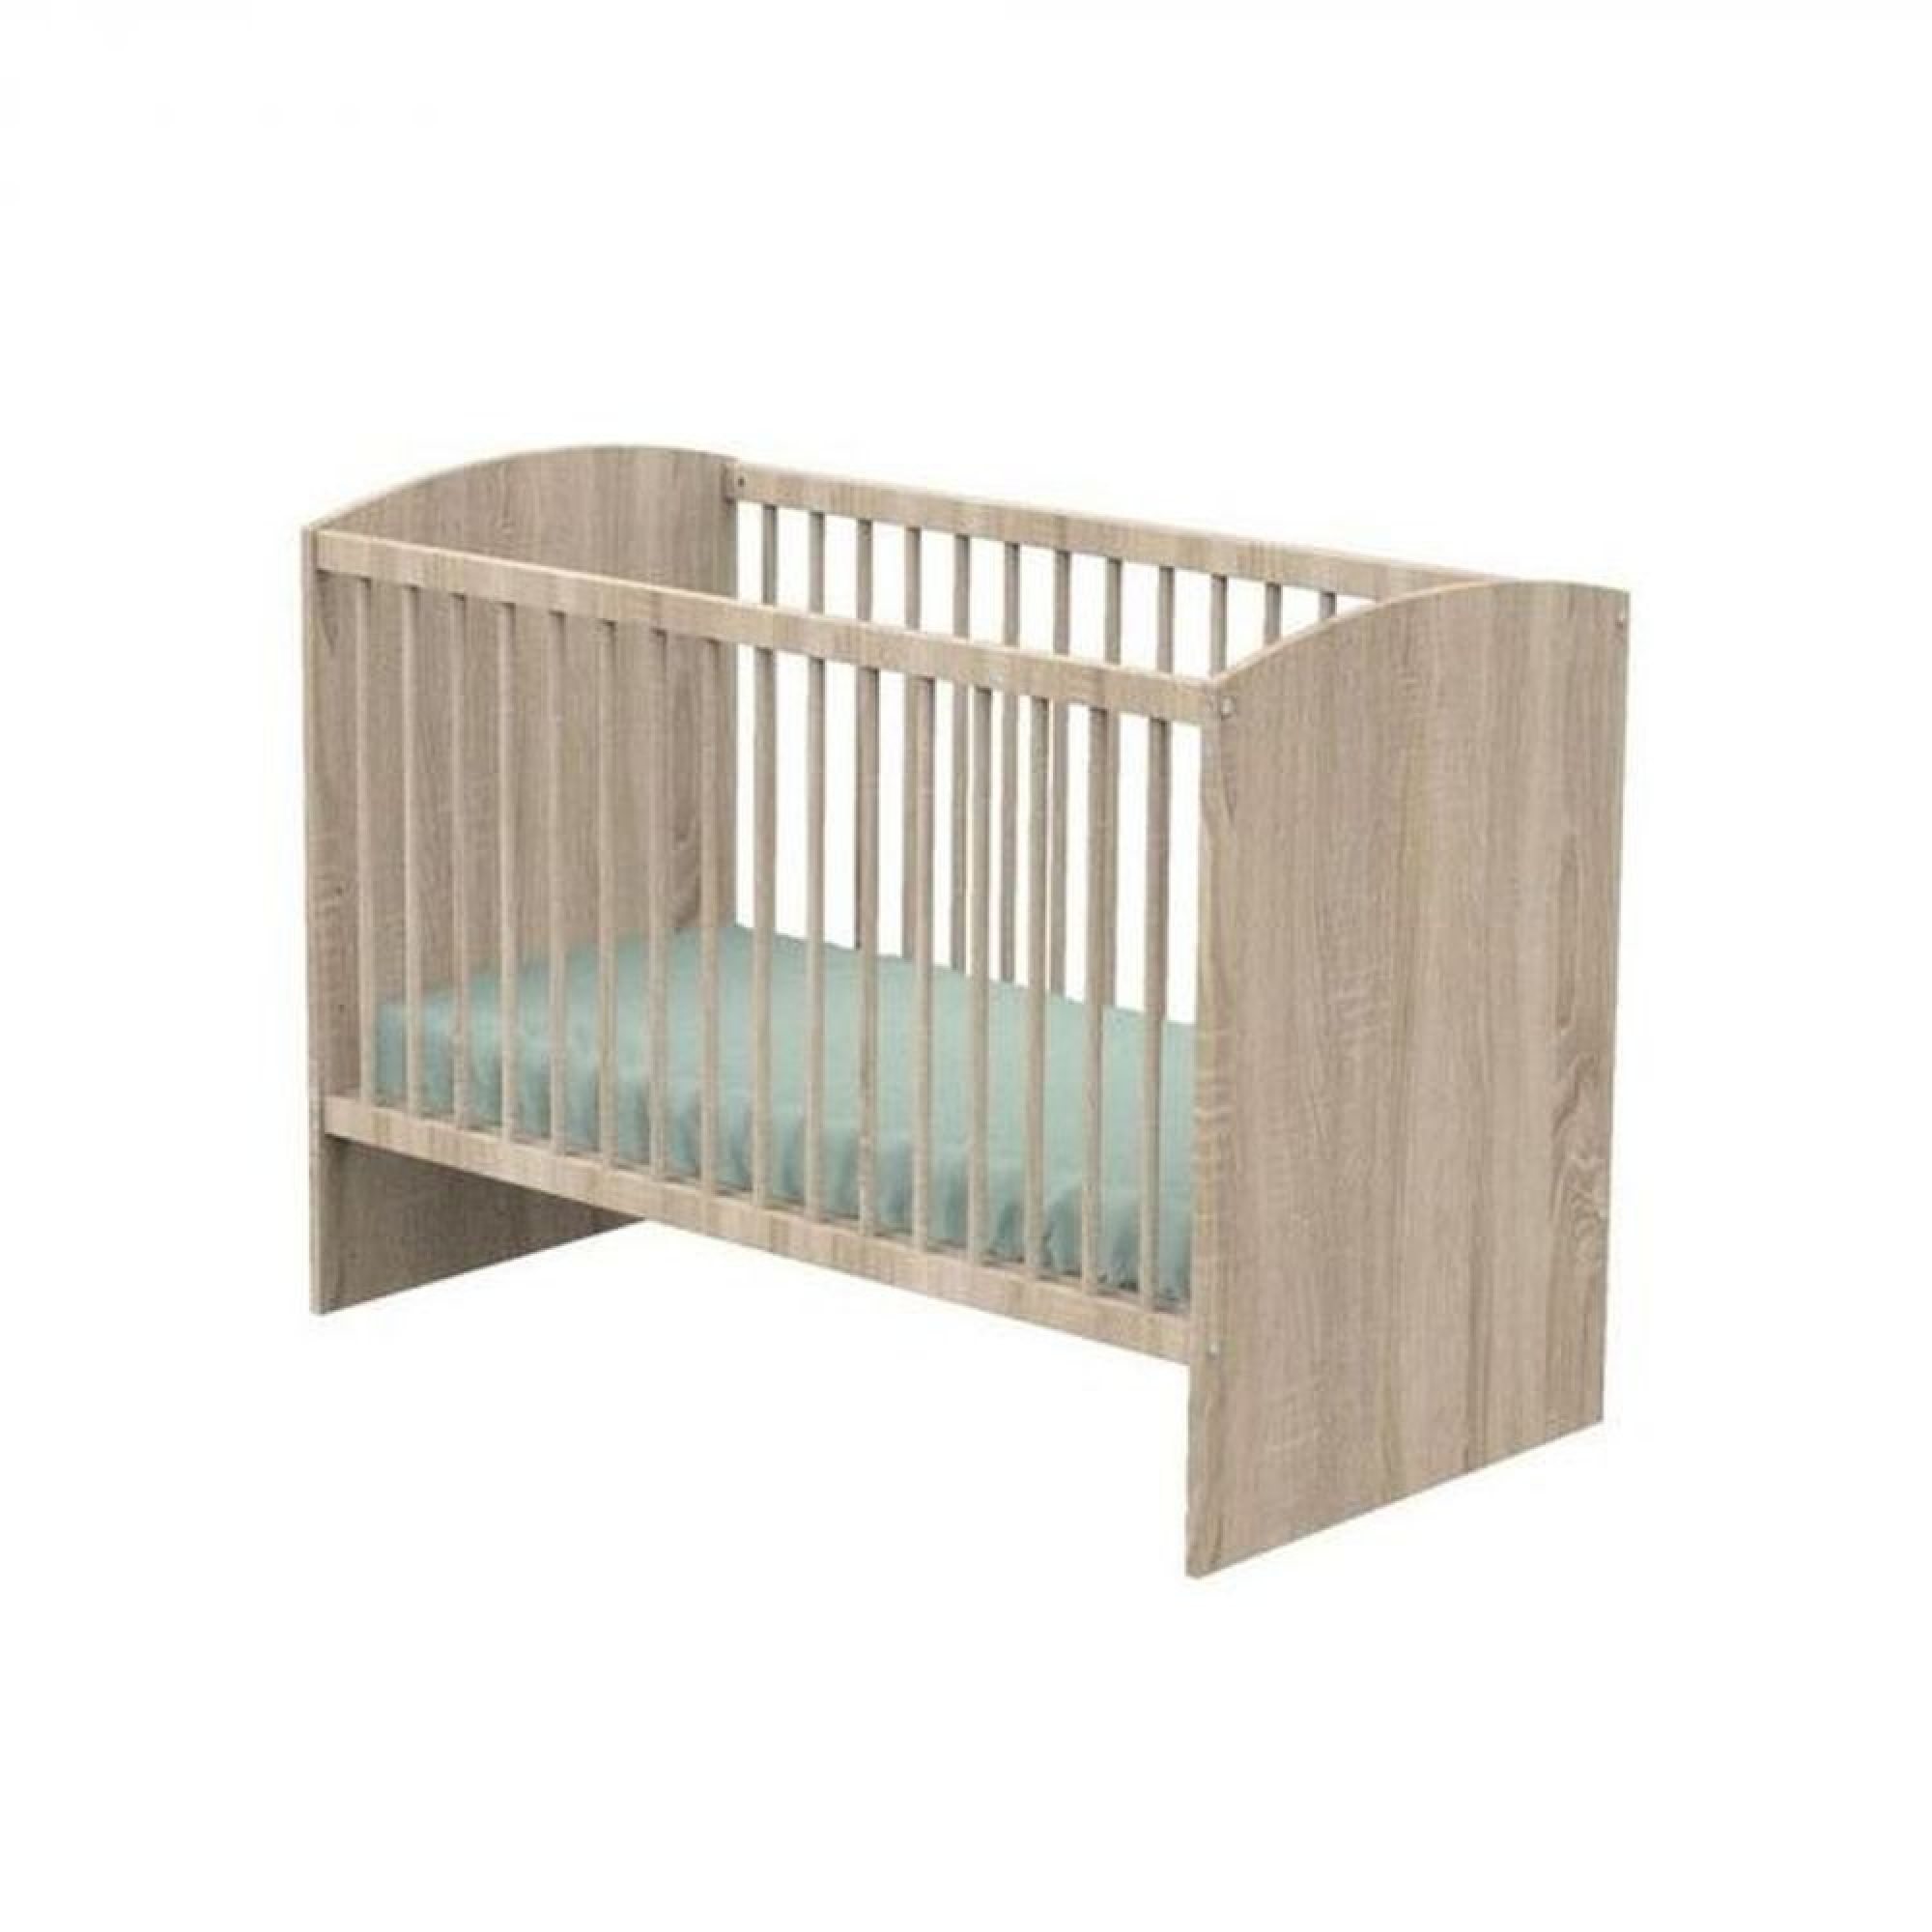 Chambre bébé trio lit 60x120+commode+armoire seventies blanc et bois de  Sauthon meubles sur allobébé